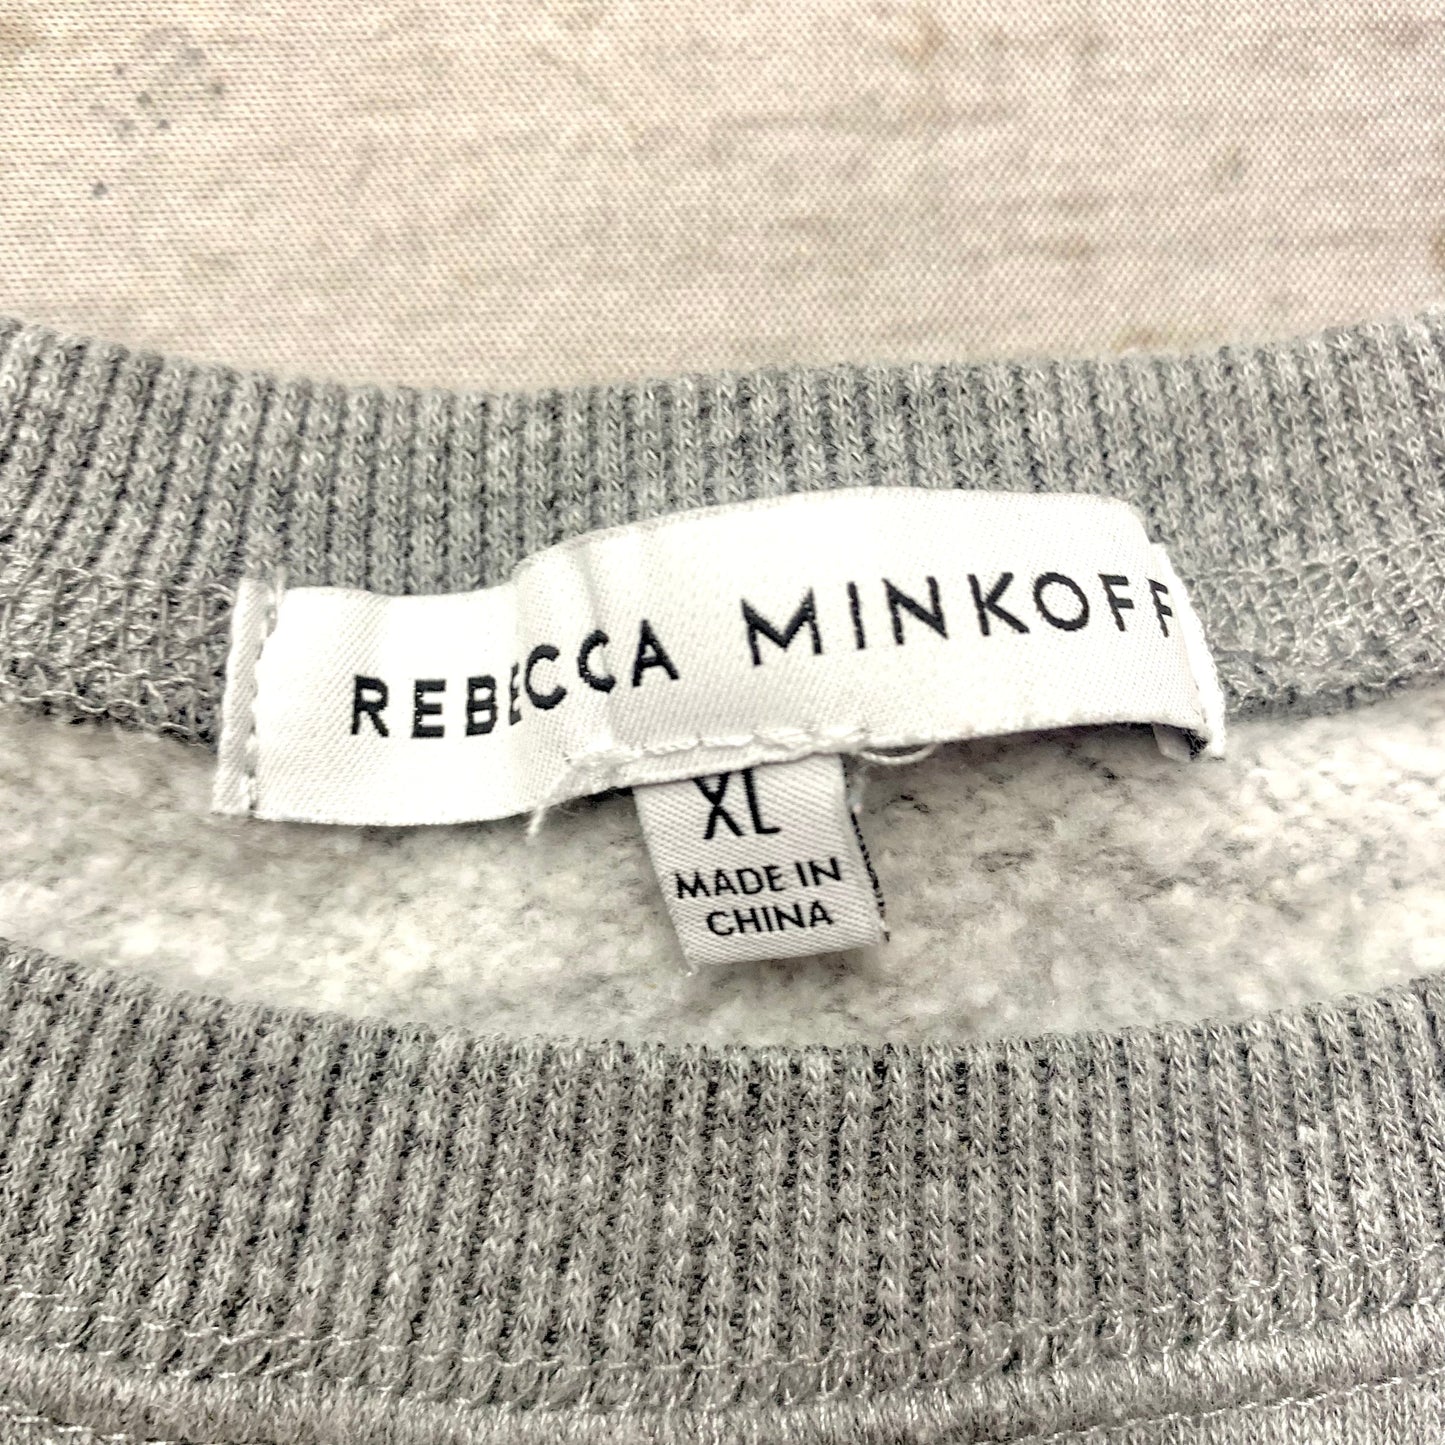 Sweatshirt Designer By Rebecca Minkoff  Size: XL